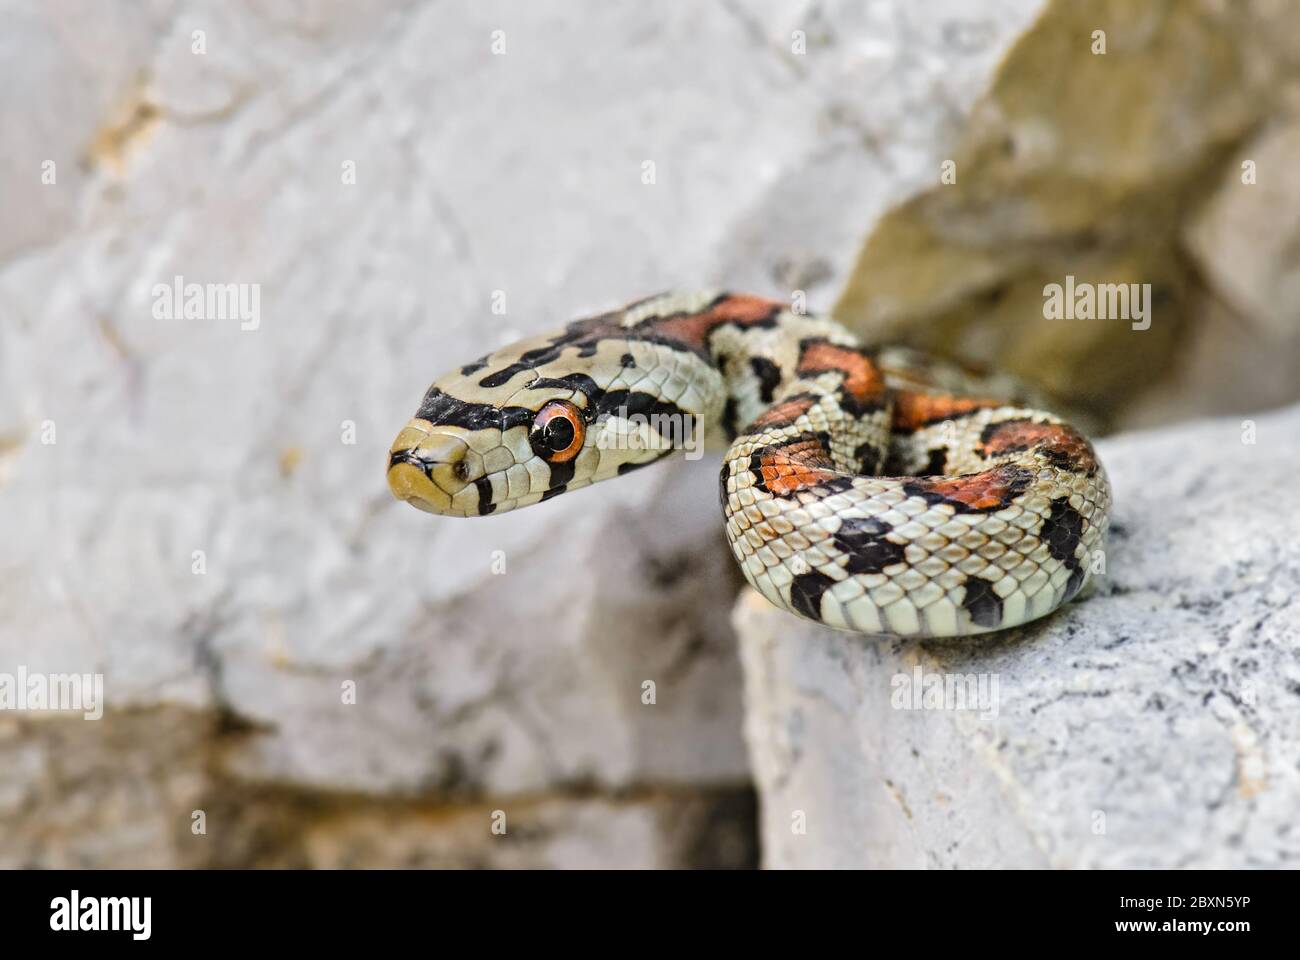 Serpent léopard - Zamenis situla, magnifique serpent coloré des rochers et buissons d'Europe du Sud, île de Pag, Croatie. Banque D'Images